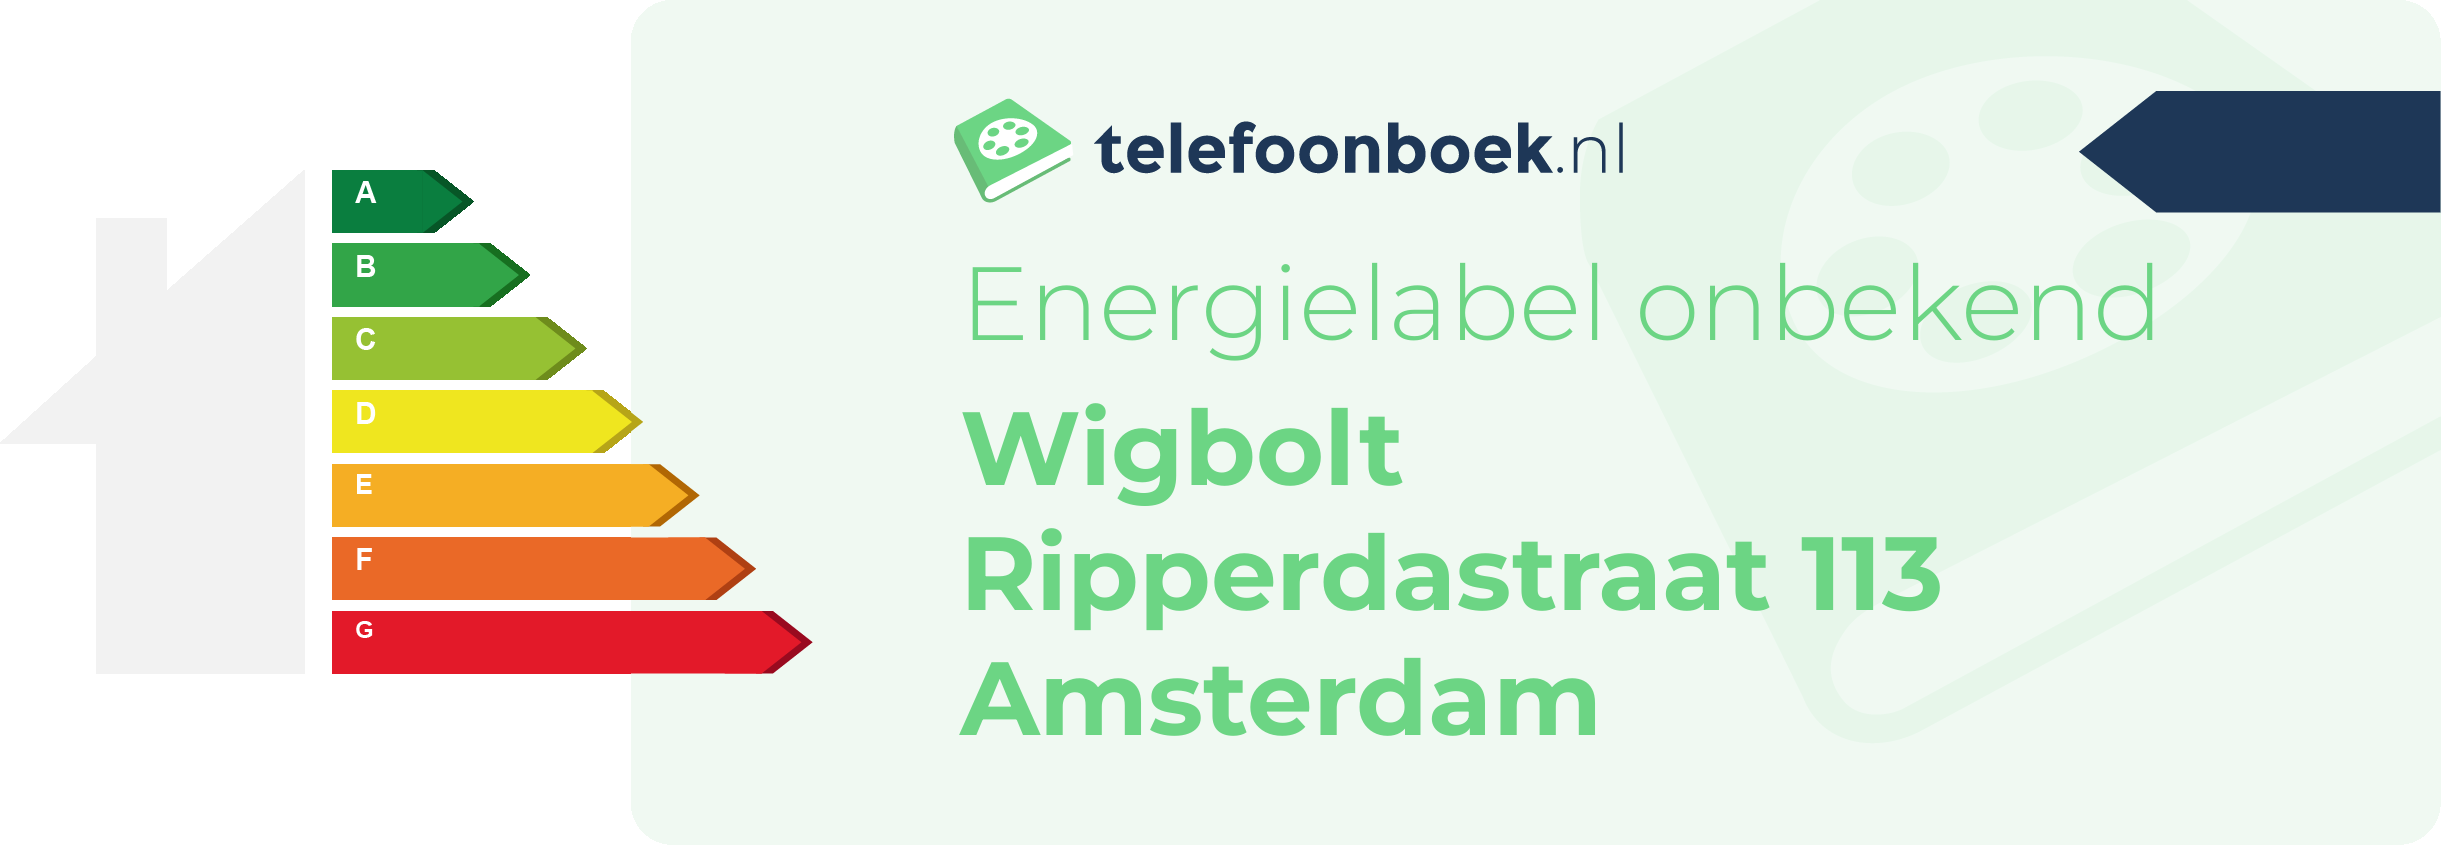 Energielabel Wigbolt Ripperdastraat 113 Amsterdam